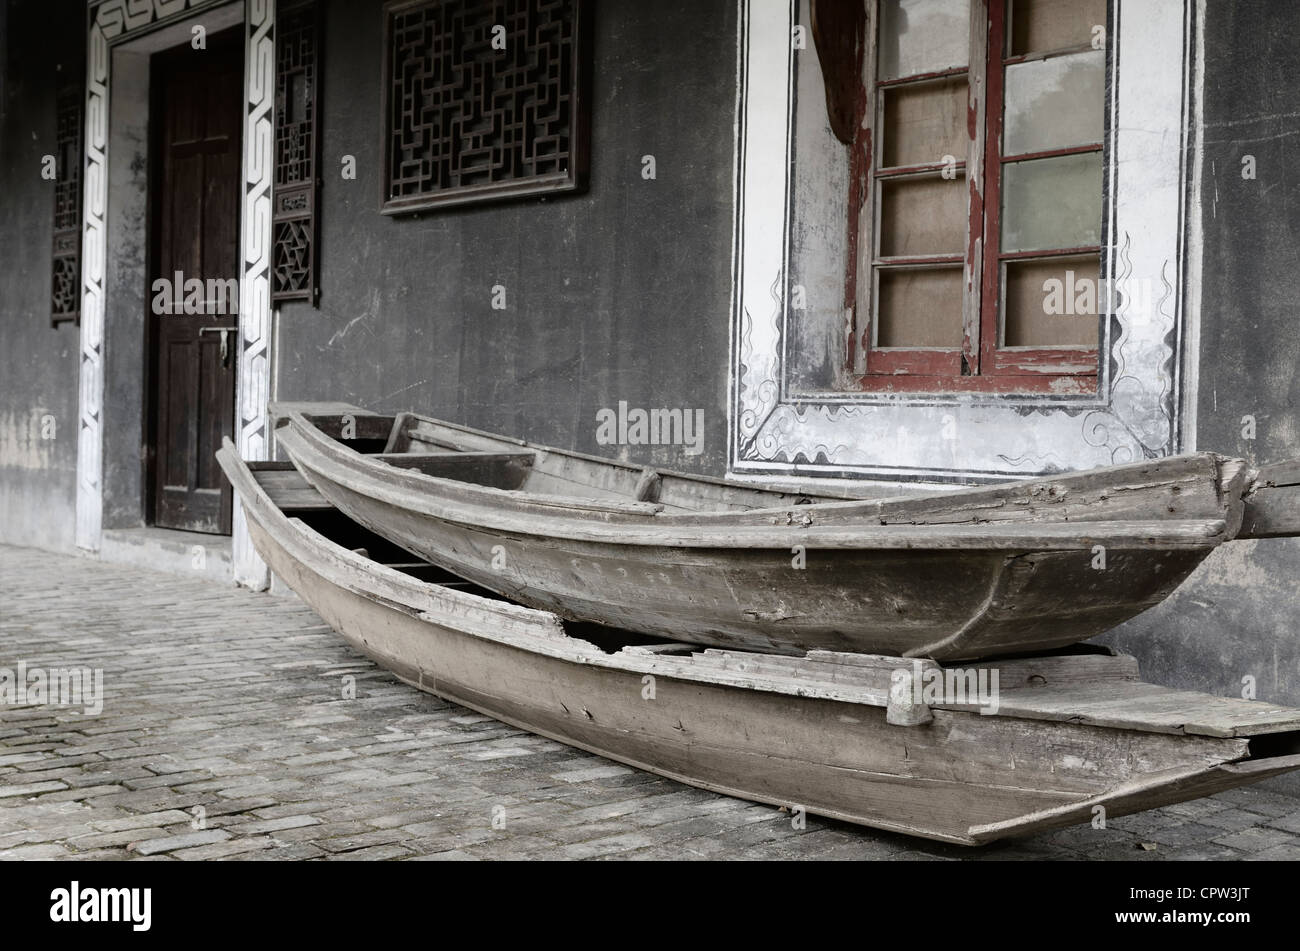 Ancien hangar à bateaux et embarcations abandonnées à Shanghai Pudong Jardins Lingkong République populaire de Chine Banque D'Images